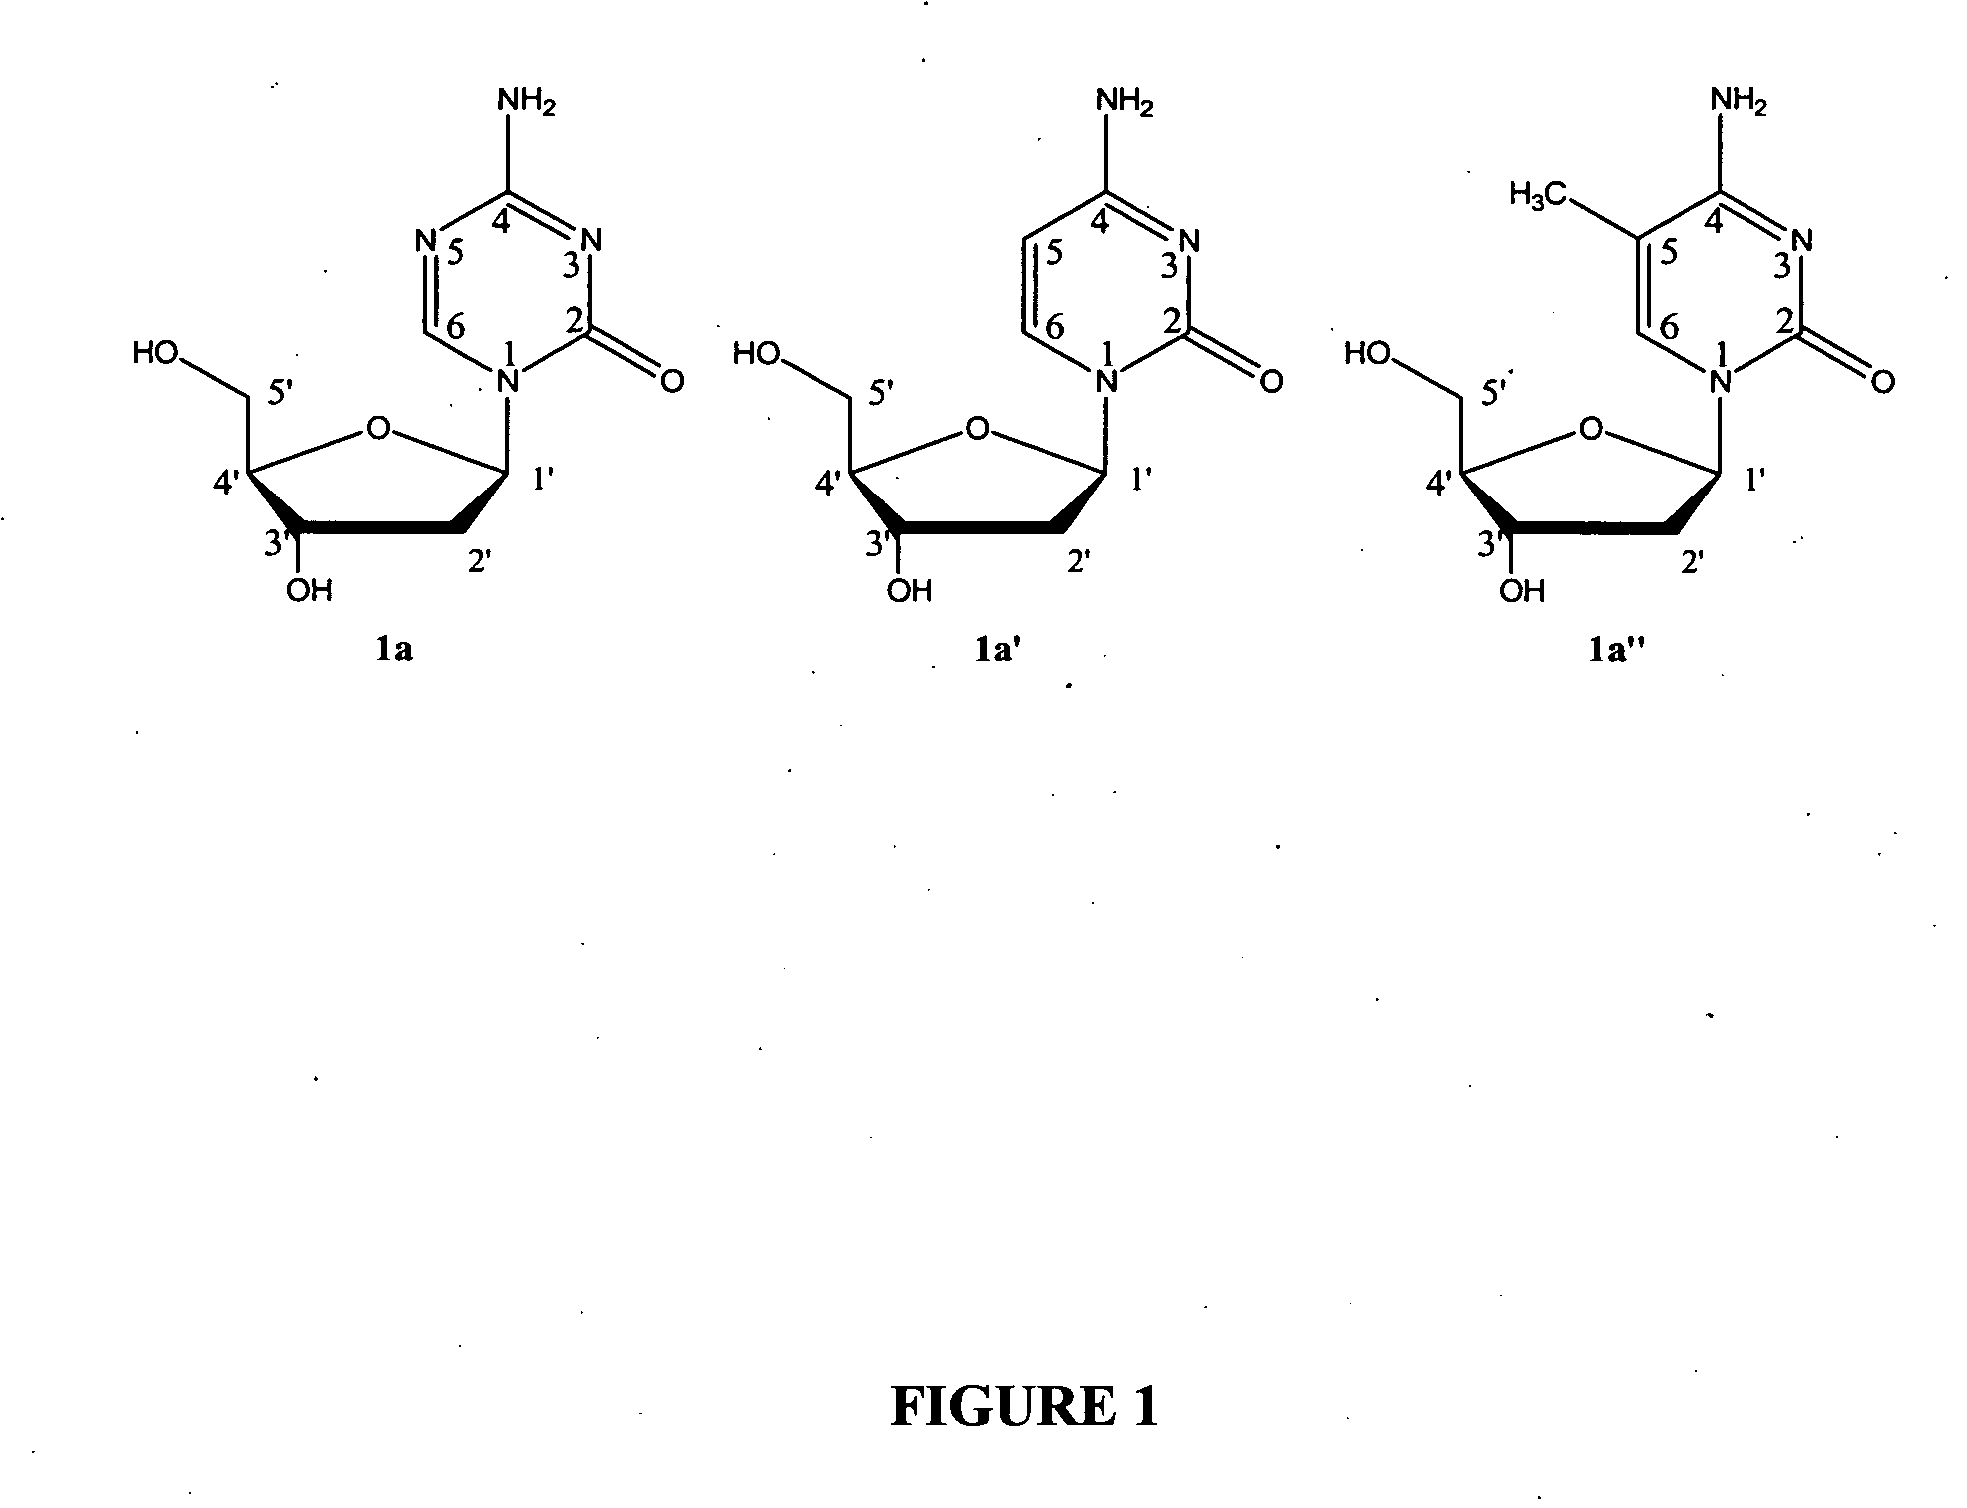 Oligonucleotide analogues incorporating 5-aza-cytosine therein